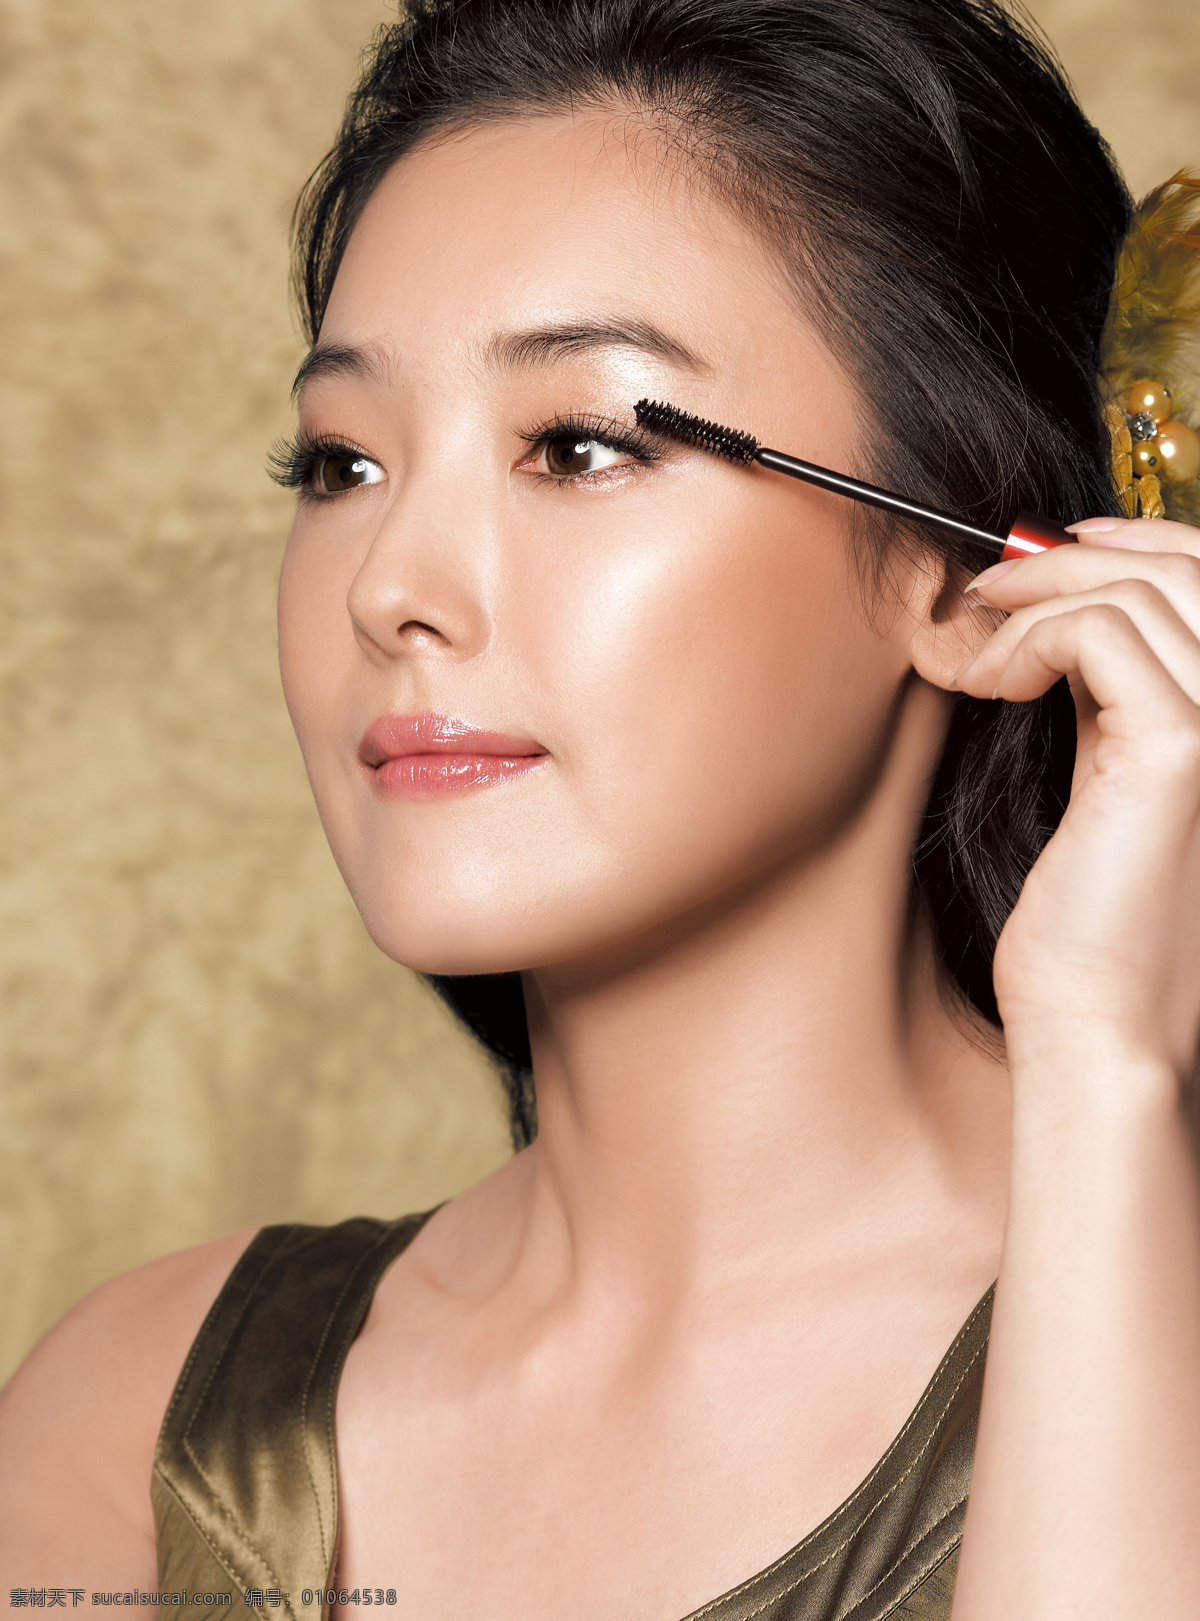 韩国 知性 美丽 女性化妆 美容 美女 化妆品模特 人物图库 人物摄影 摄影图库 人物图片